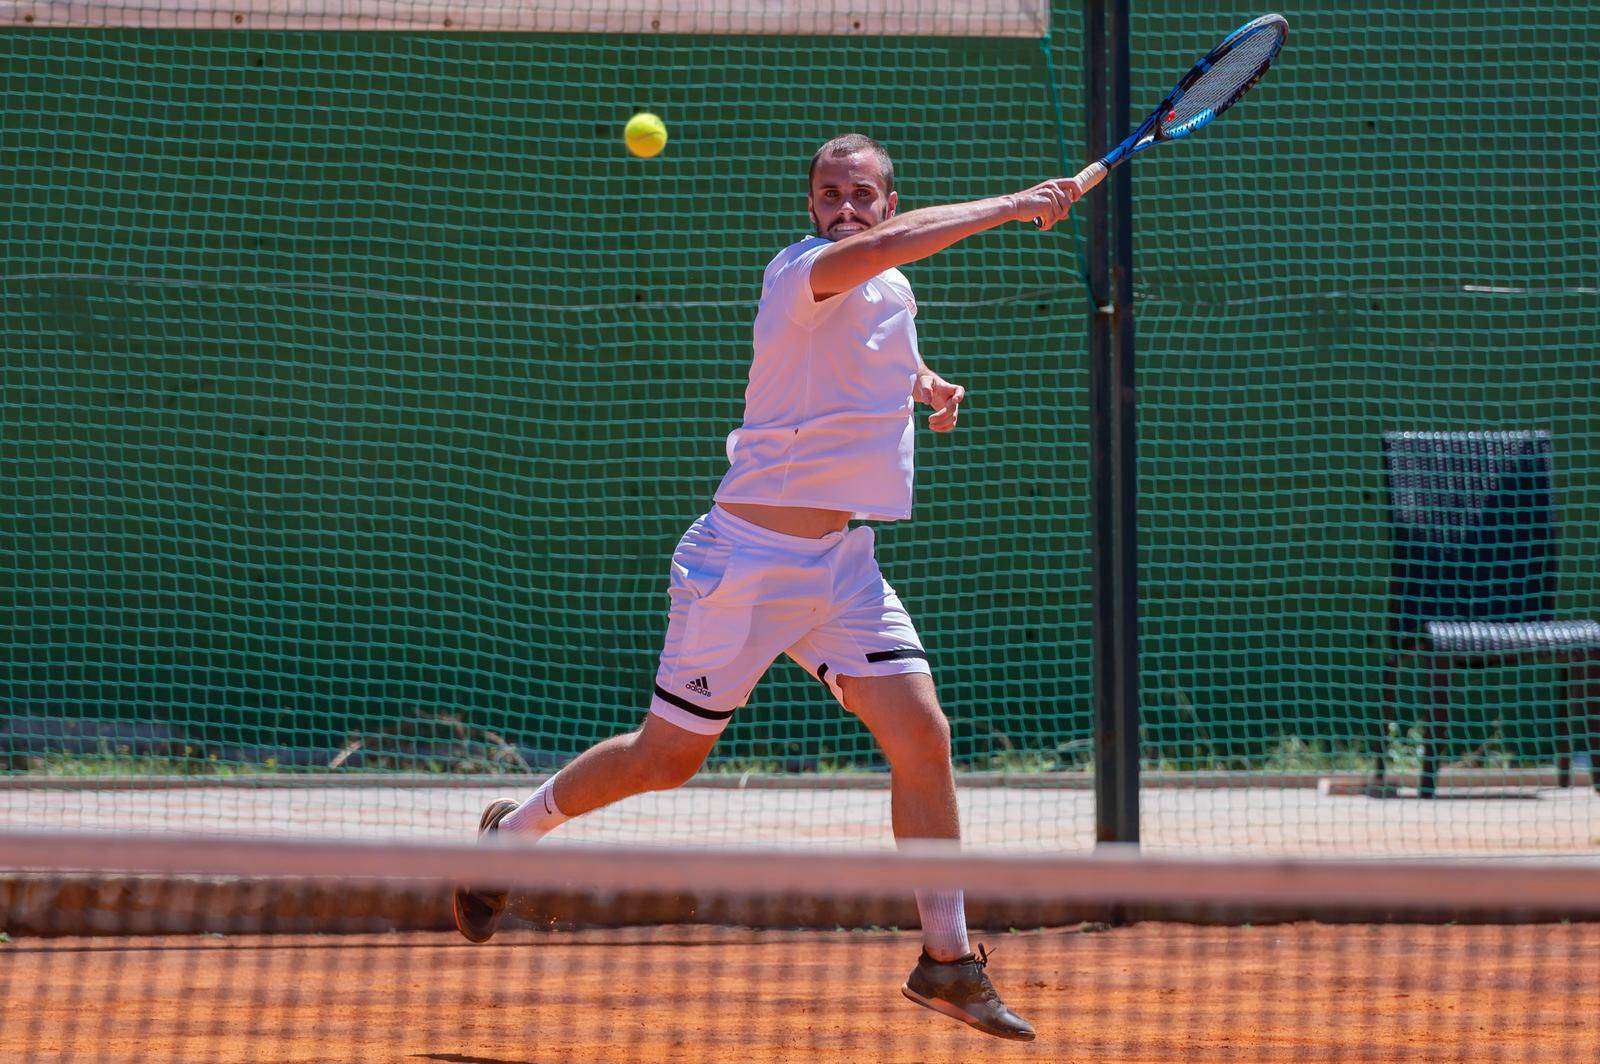 U Novalji je završen teniski  turnir Stars Open Tour